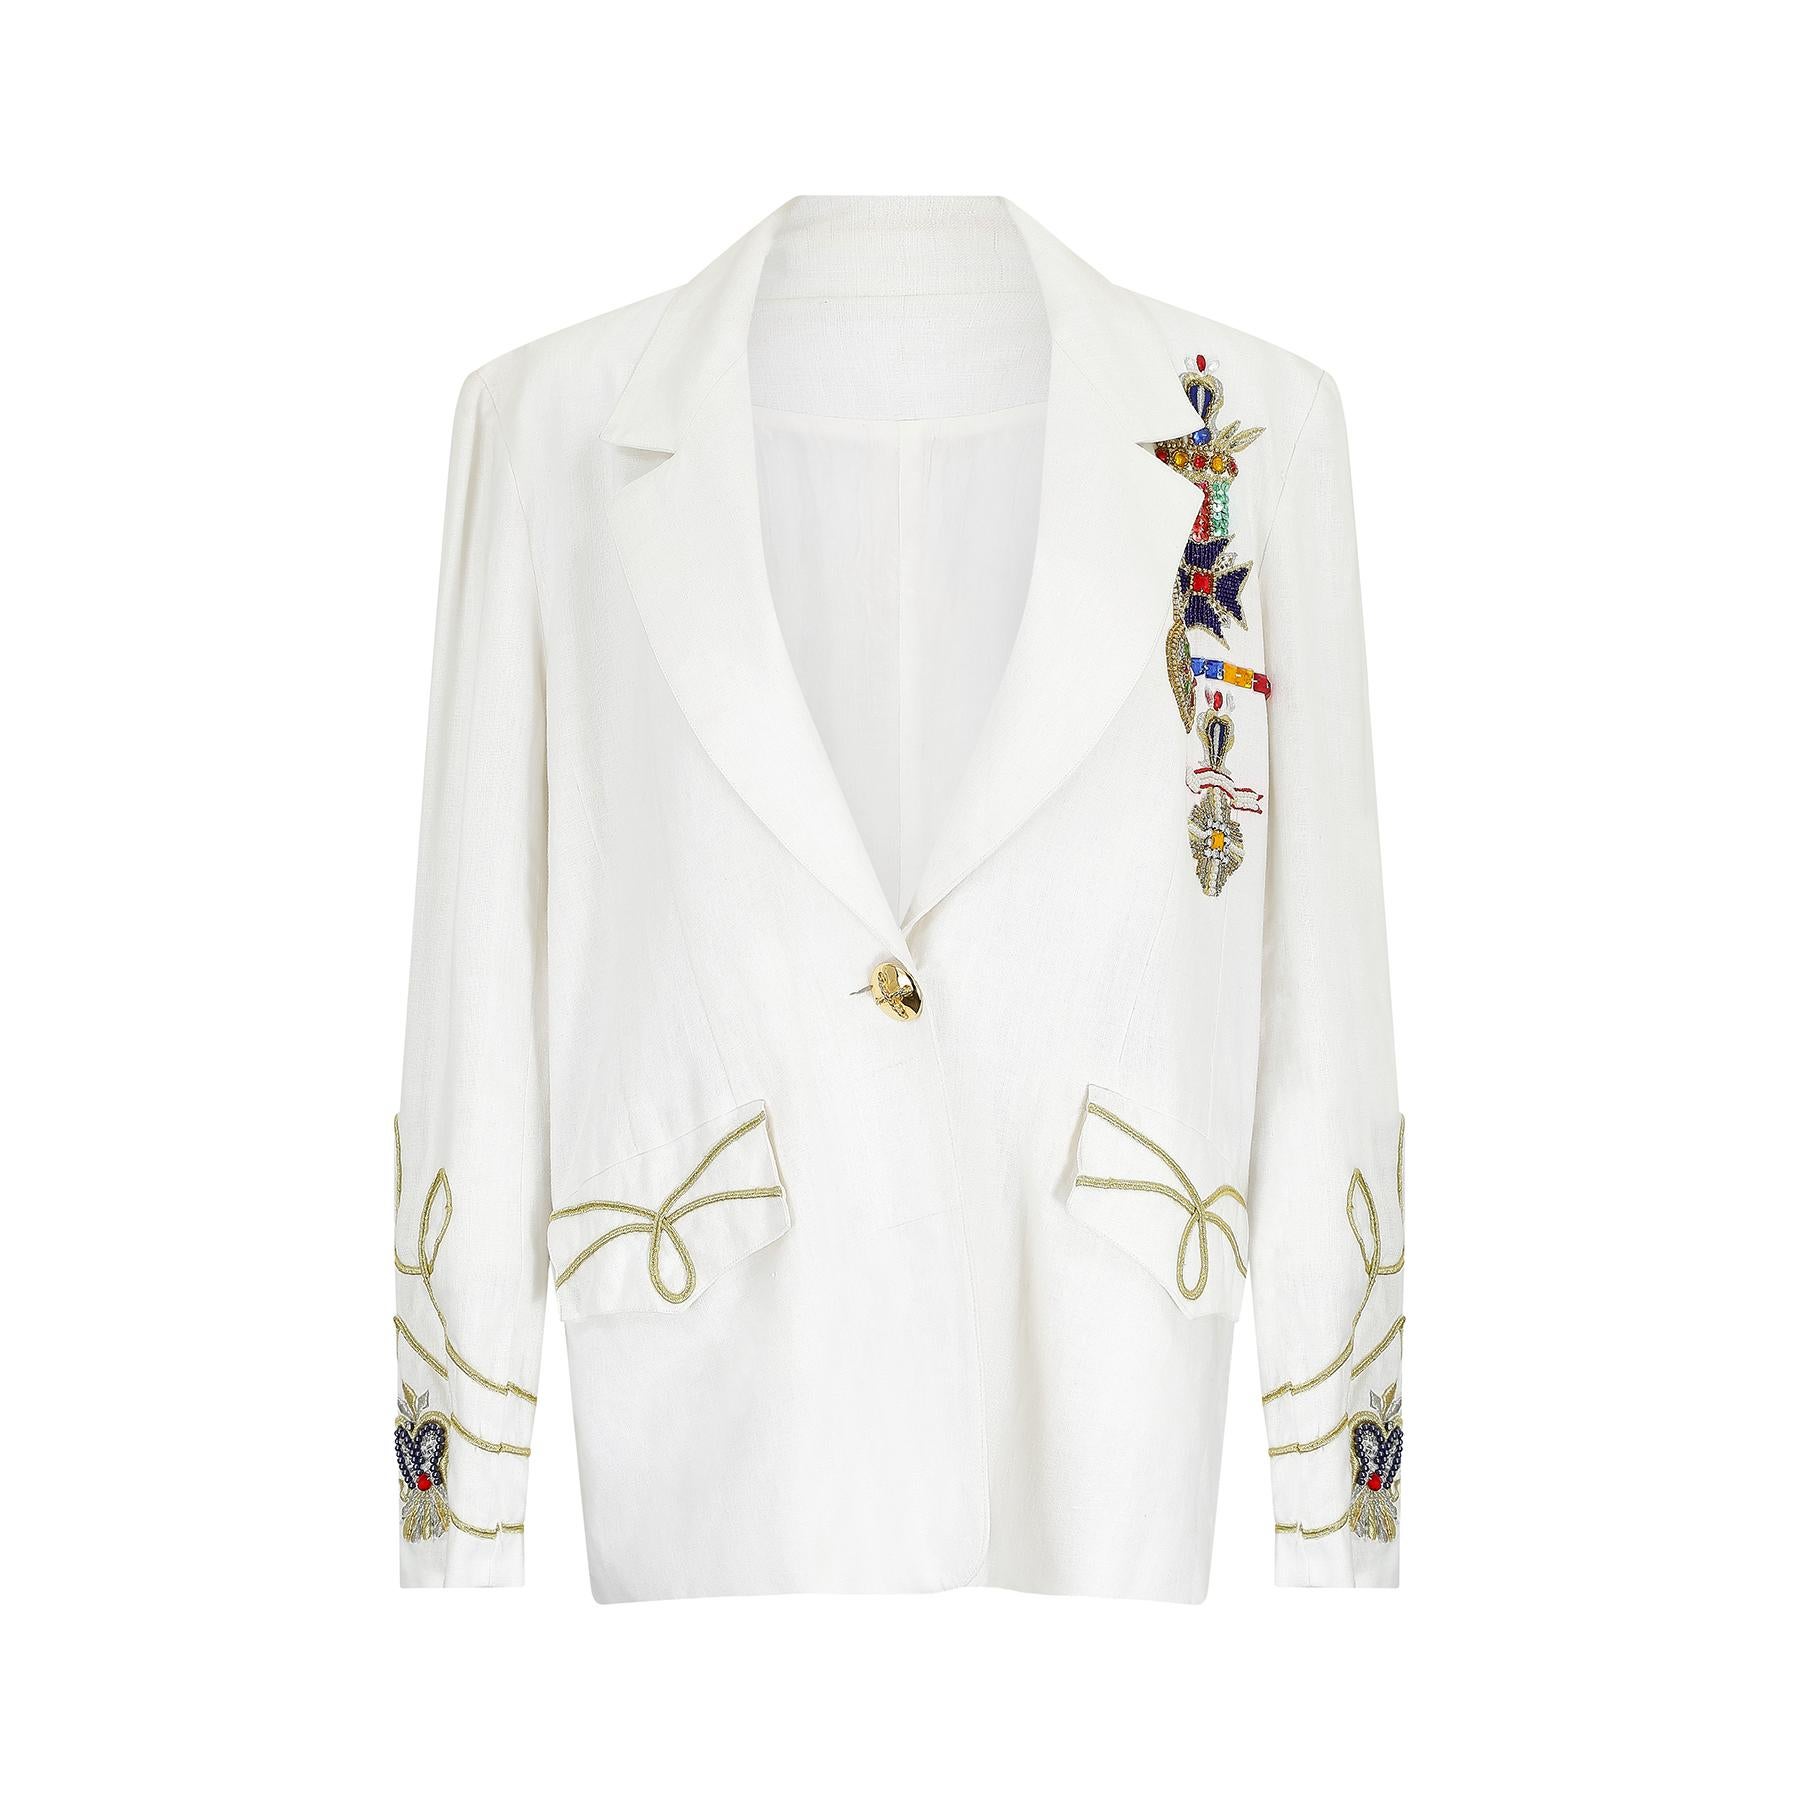 Cette veste fantaisie en lin blanc de la fin des années 1980 au début des années 1990 a sans aucun doute été inspirée par les créations fantaisistes de Moschino et Versace. Ce modèle inhabituel est une version flamboyante de l'uniforme militaire et